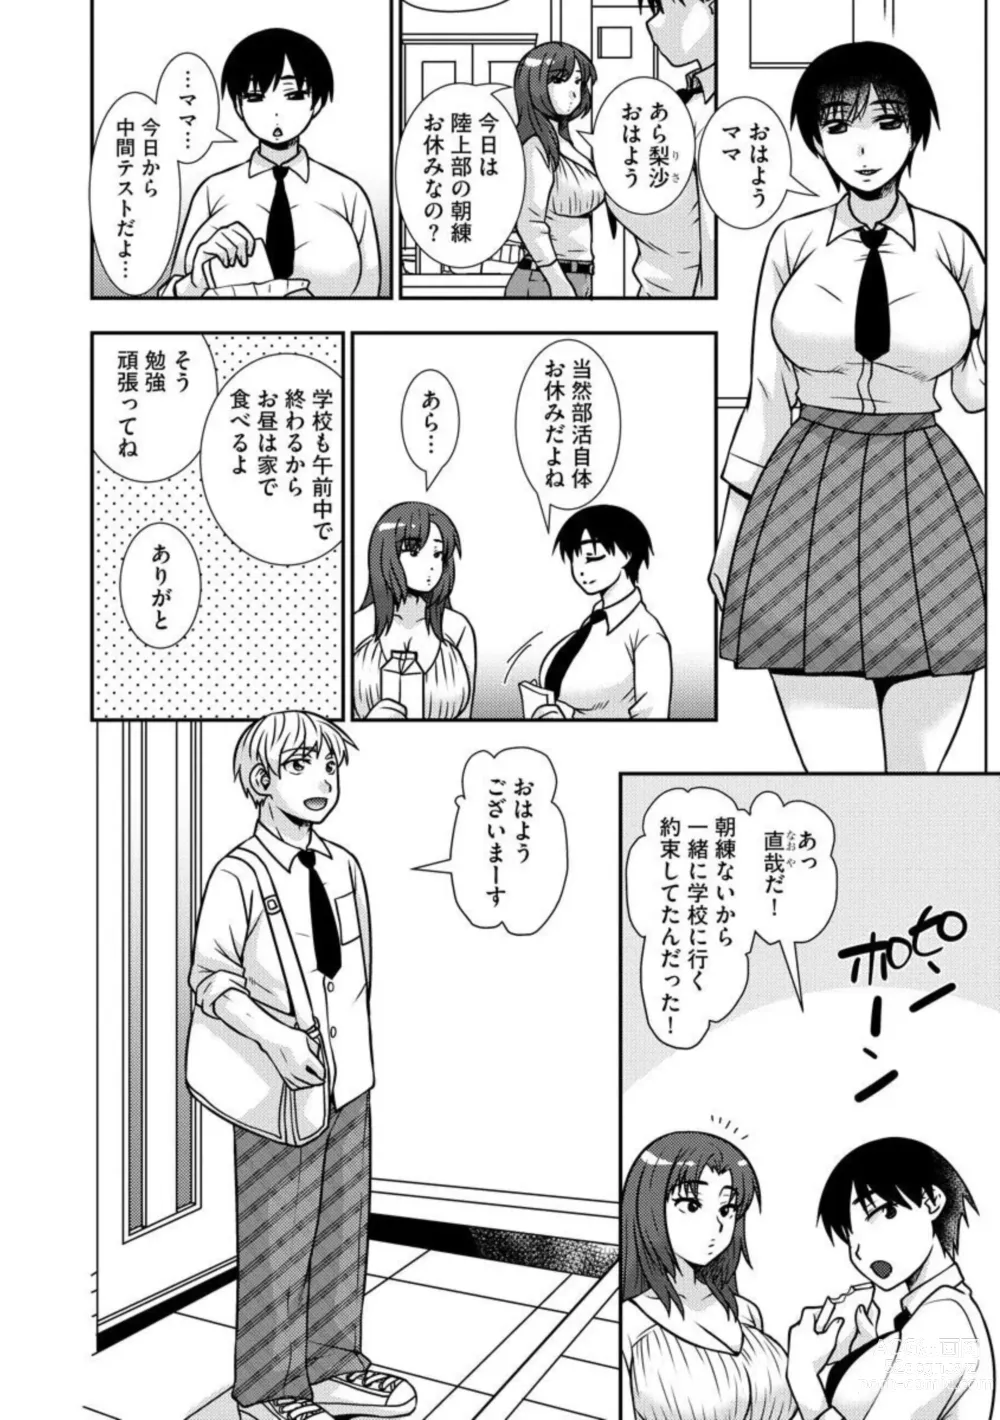 Page 5 of manga Netori Haha Musume no Kareshi no Are ga Wasurerarenakute 1